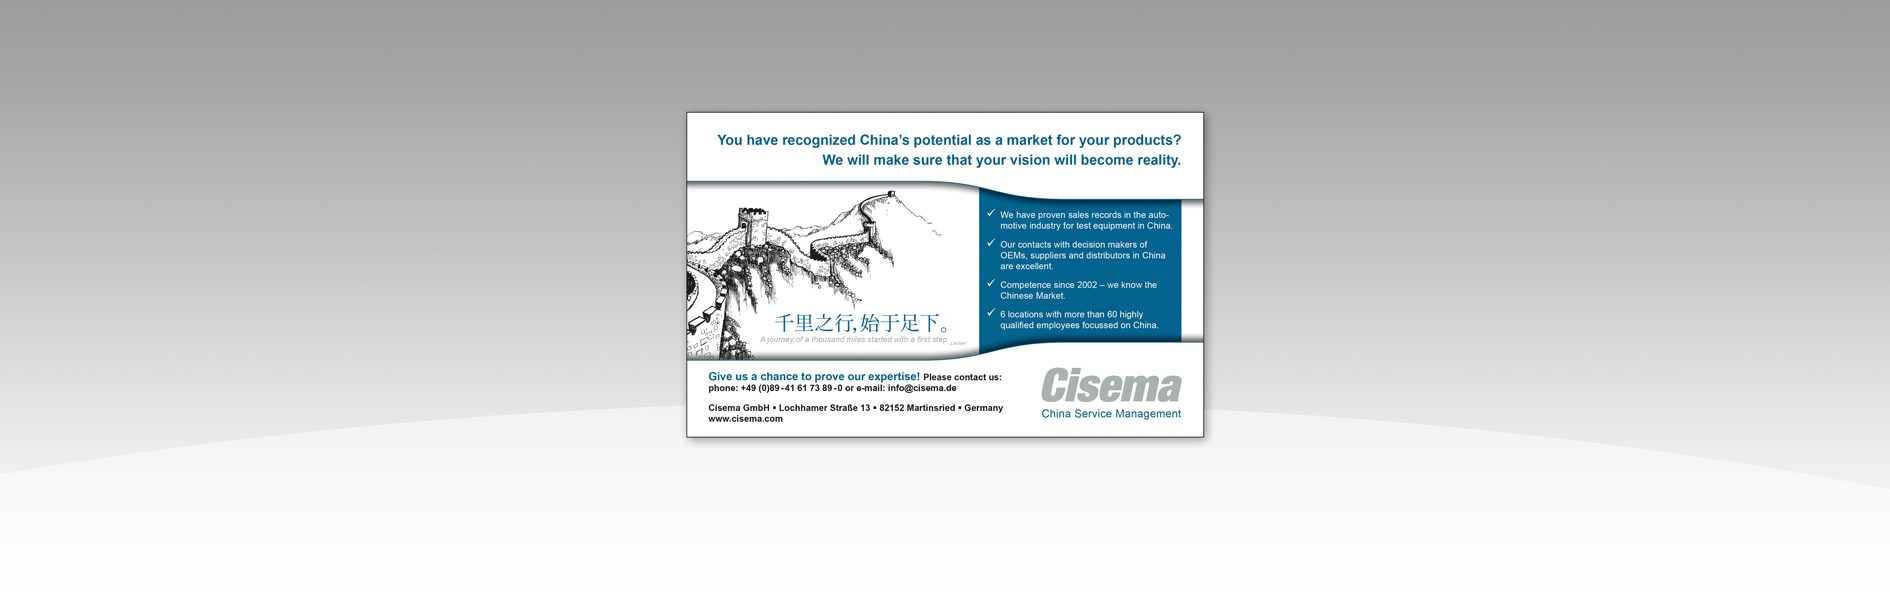 Hier ist die englische Anzeige von Cisema abgebildet.